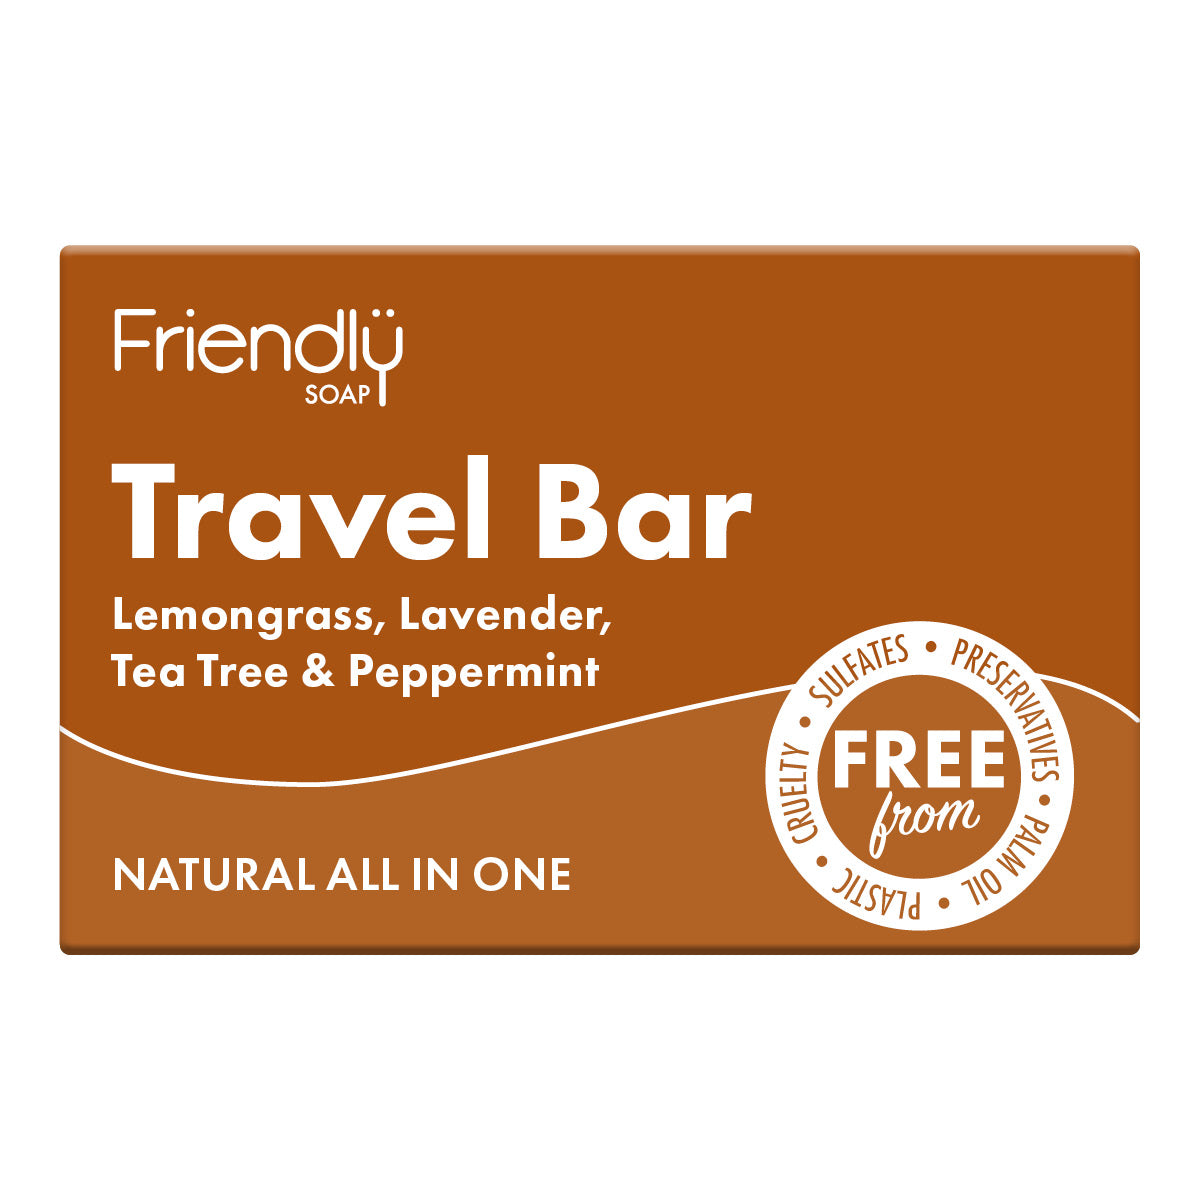 Travel Bar - Lemongrass, Lavender, Tea Tree & Peppermint